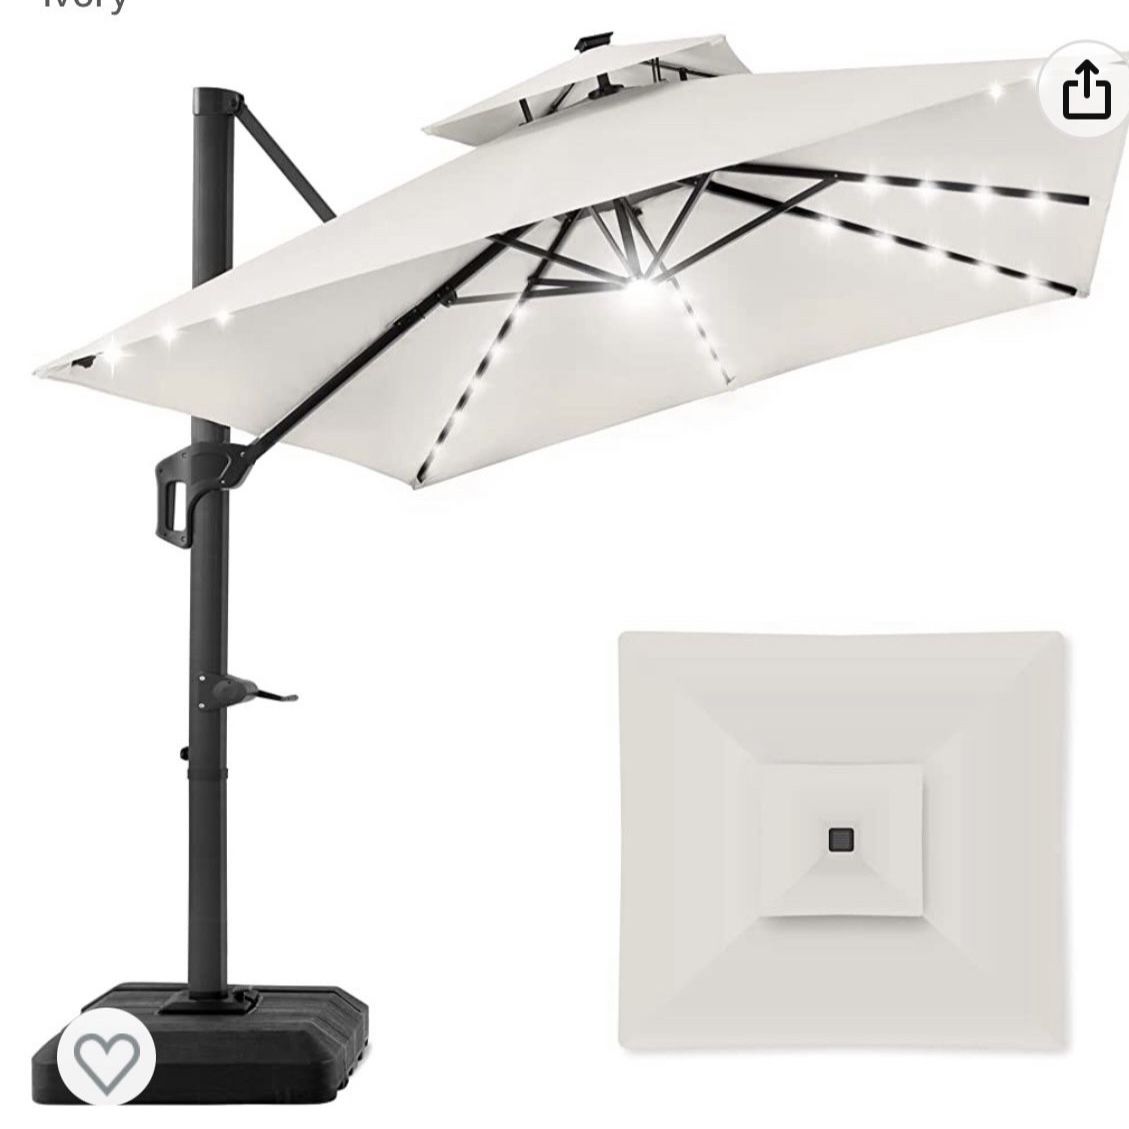 Cantilever Umbrella 10x10